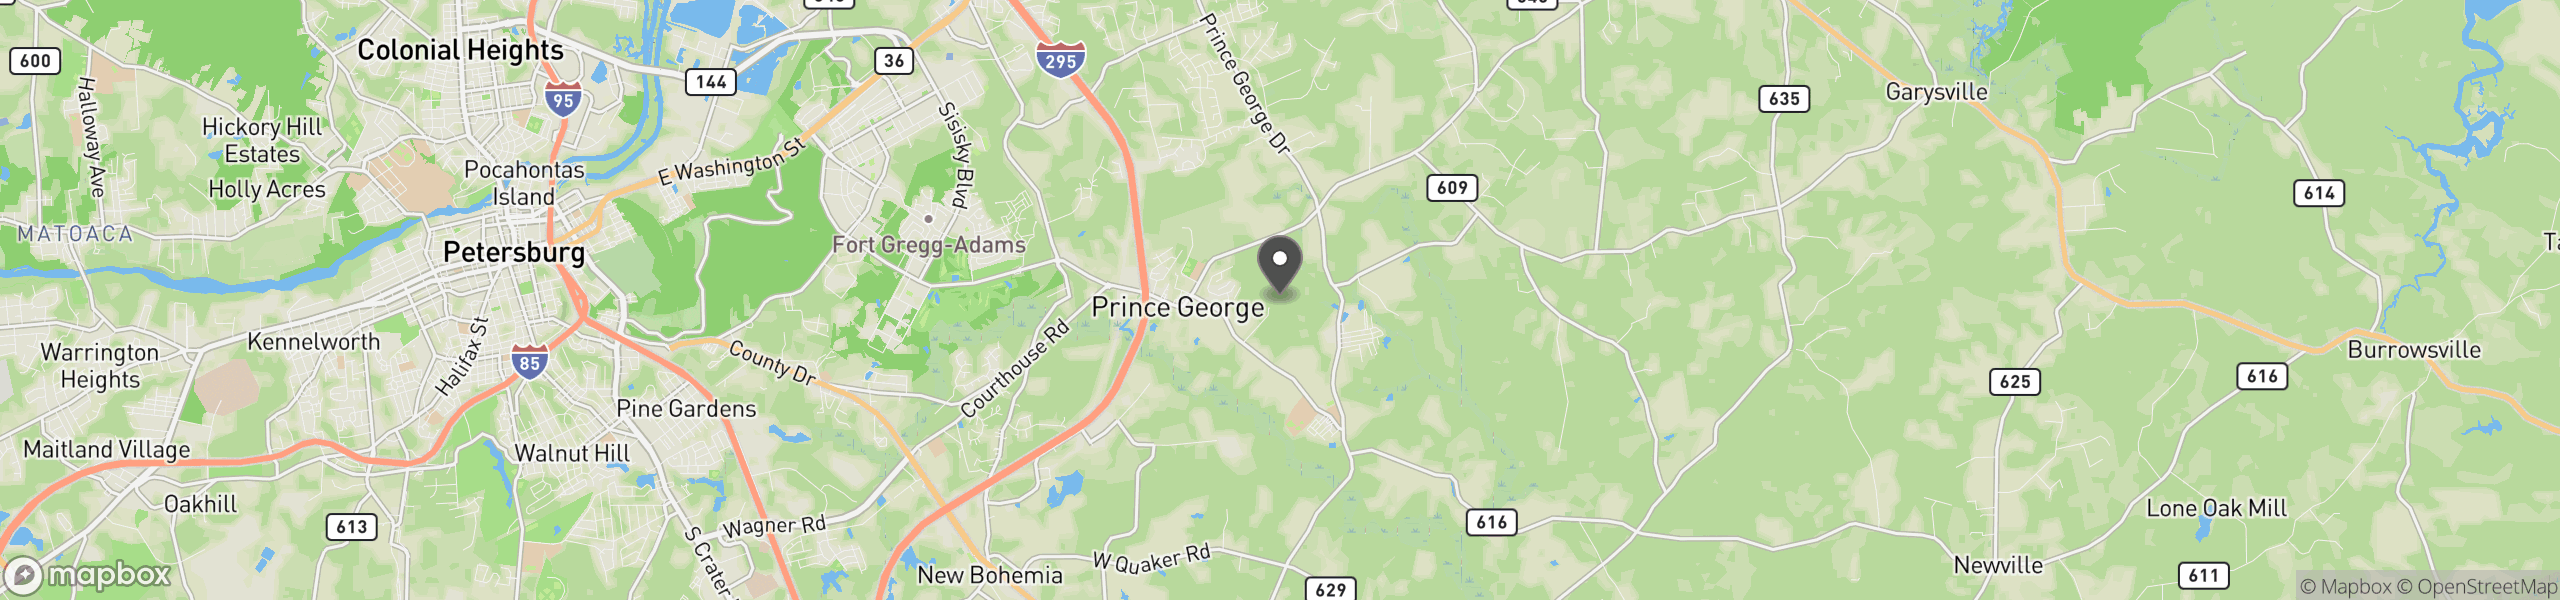 Prince George, VA